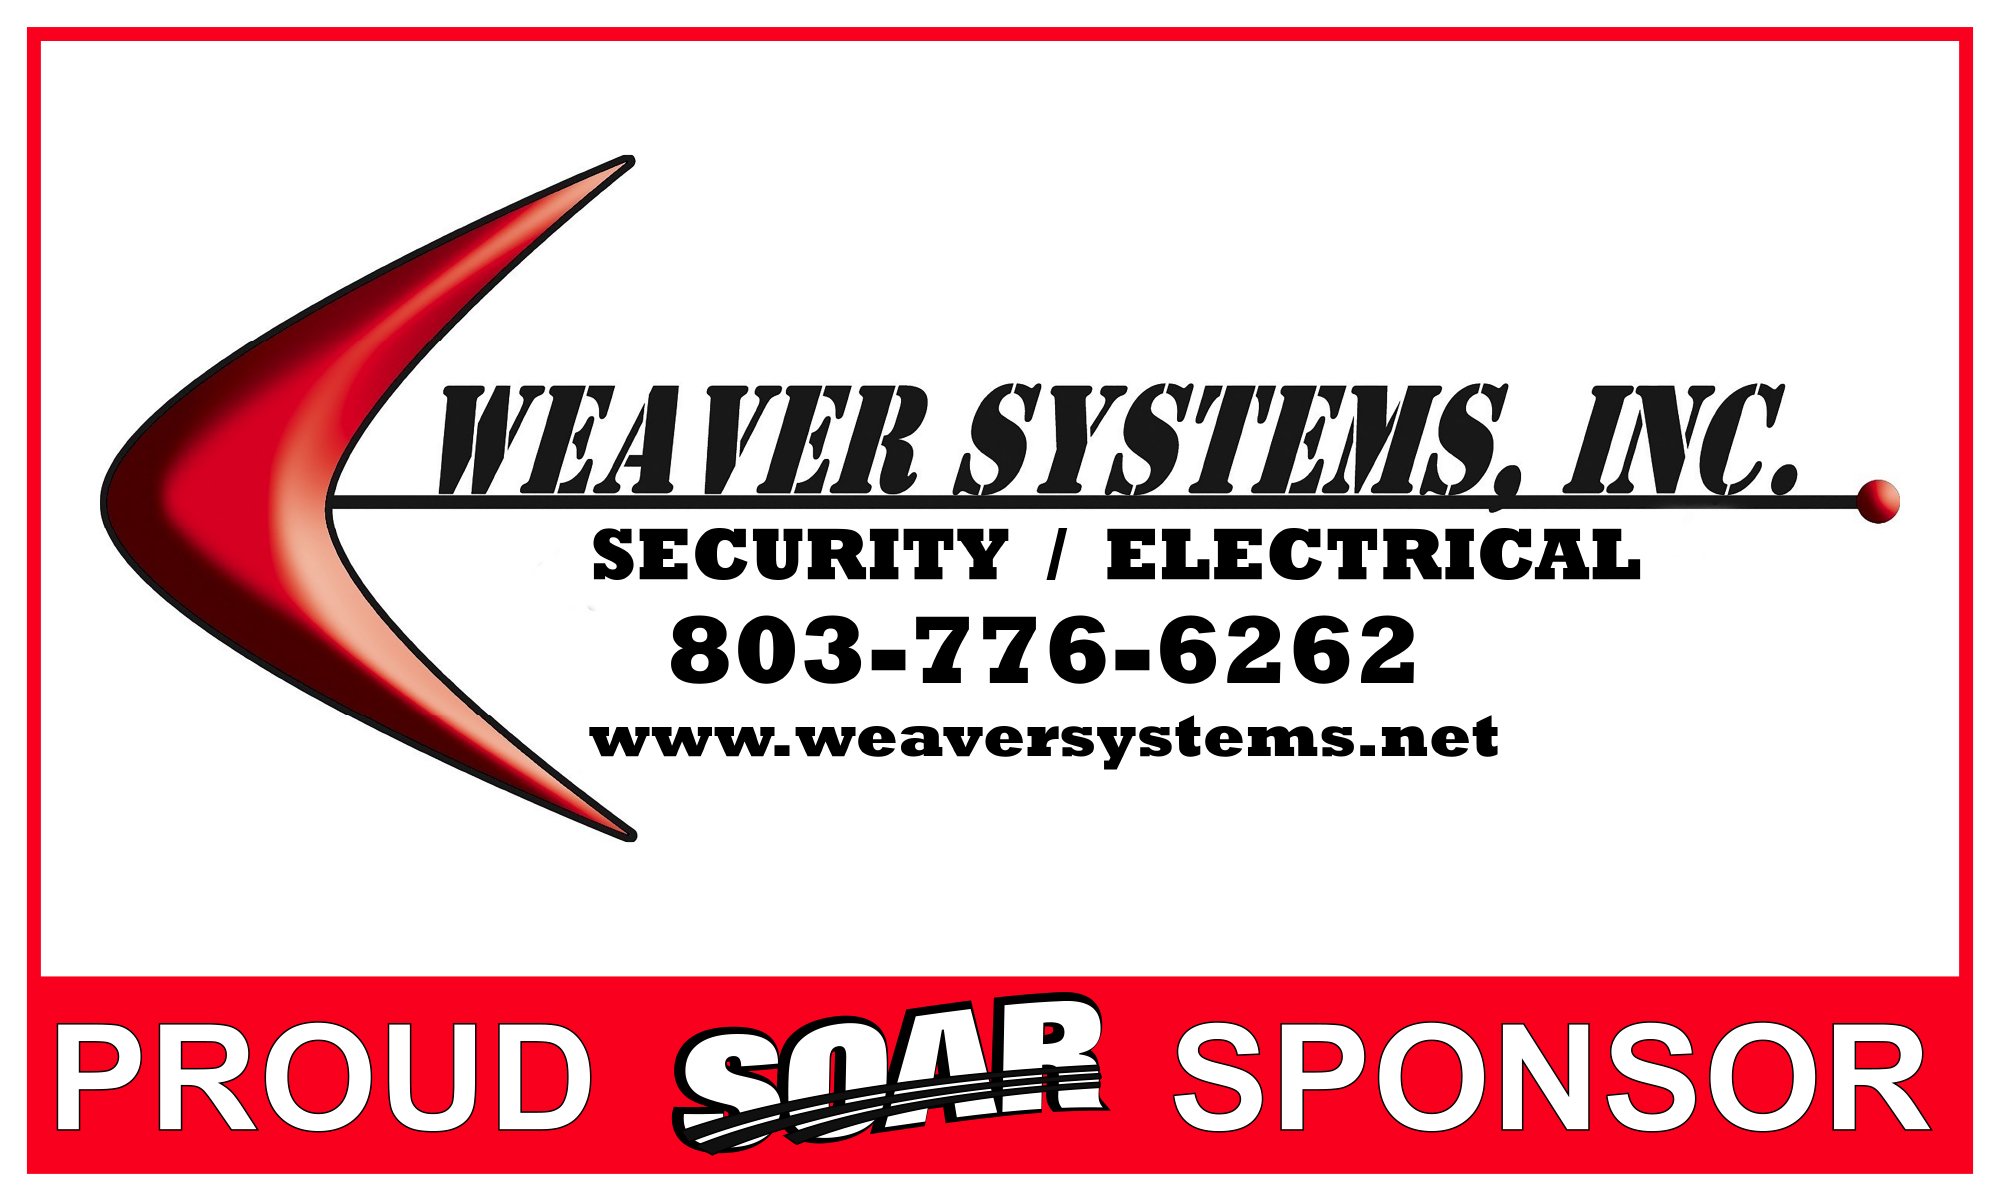 Weaver systems banner.jpg